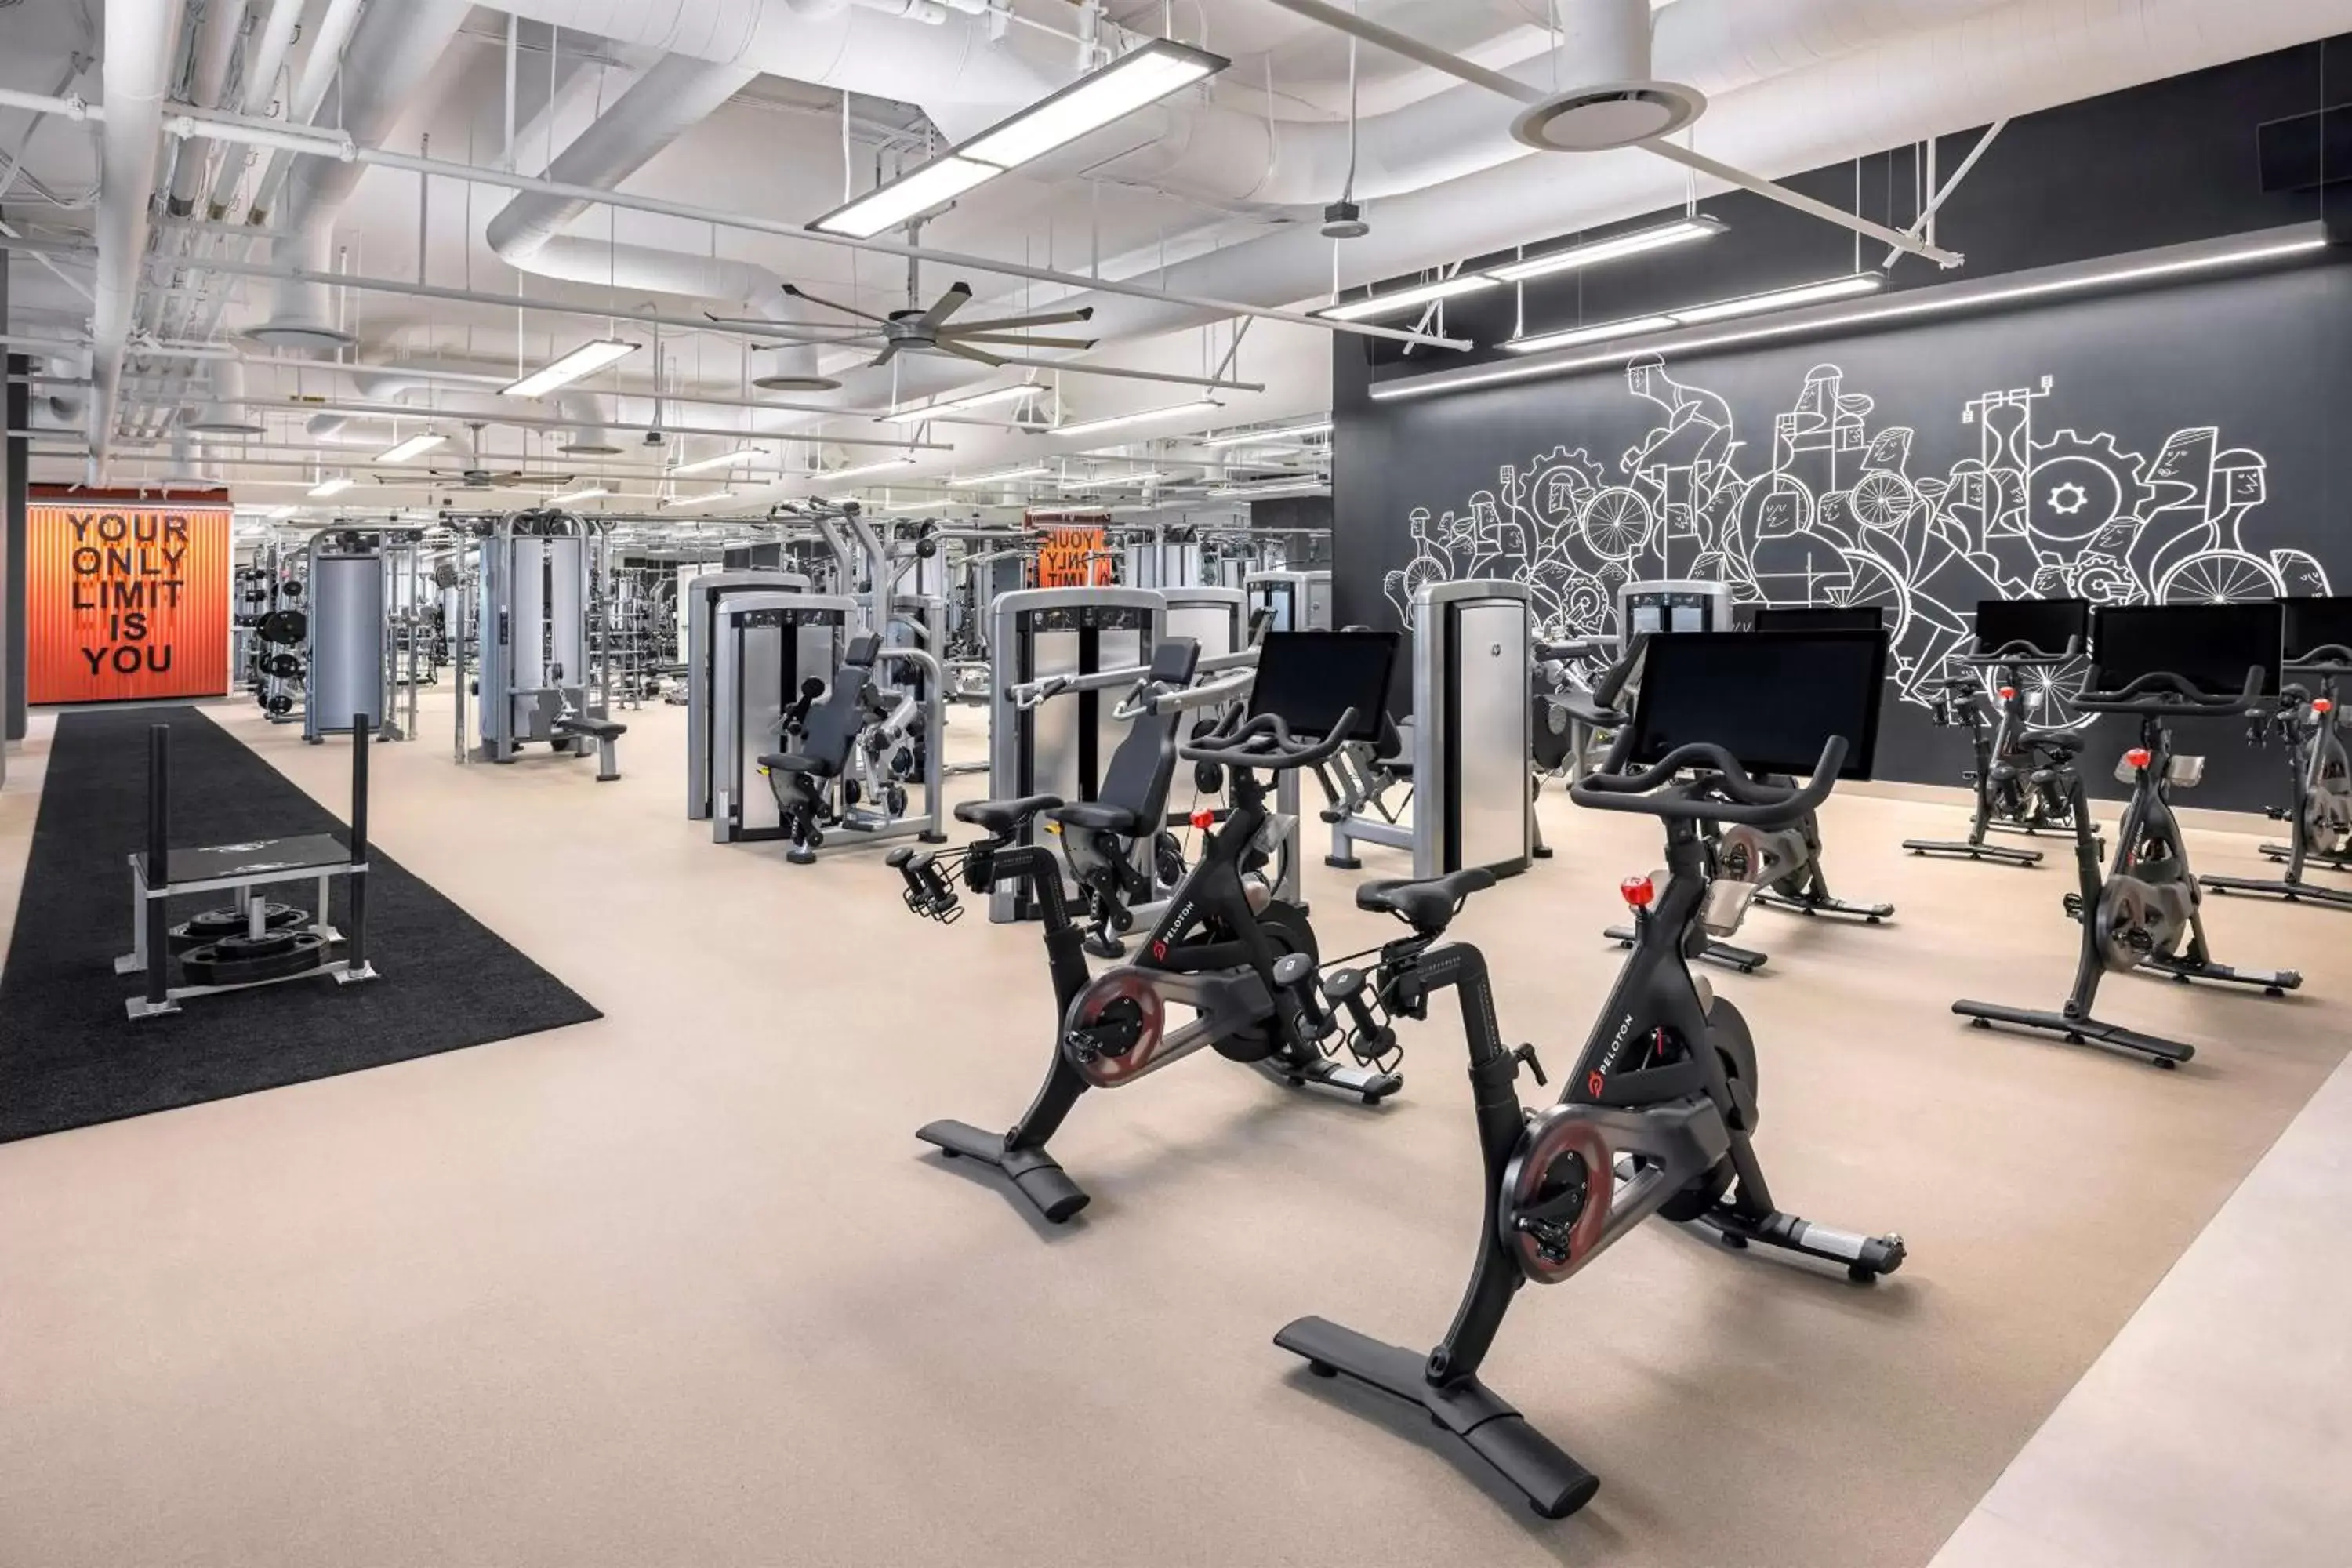 Fitness centre/facilities, Fitness Center/Facilities in Crockfords Las Vegas, LXR Hotels & Resorts at Resorts World